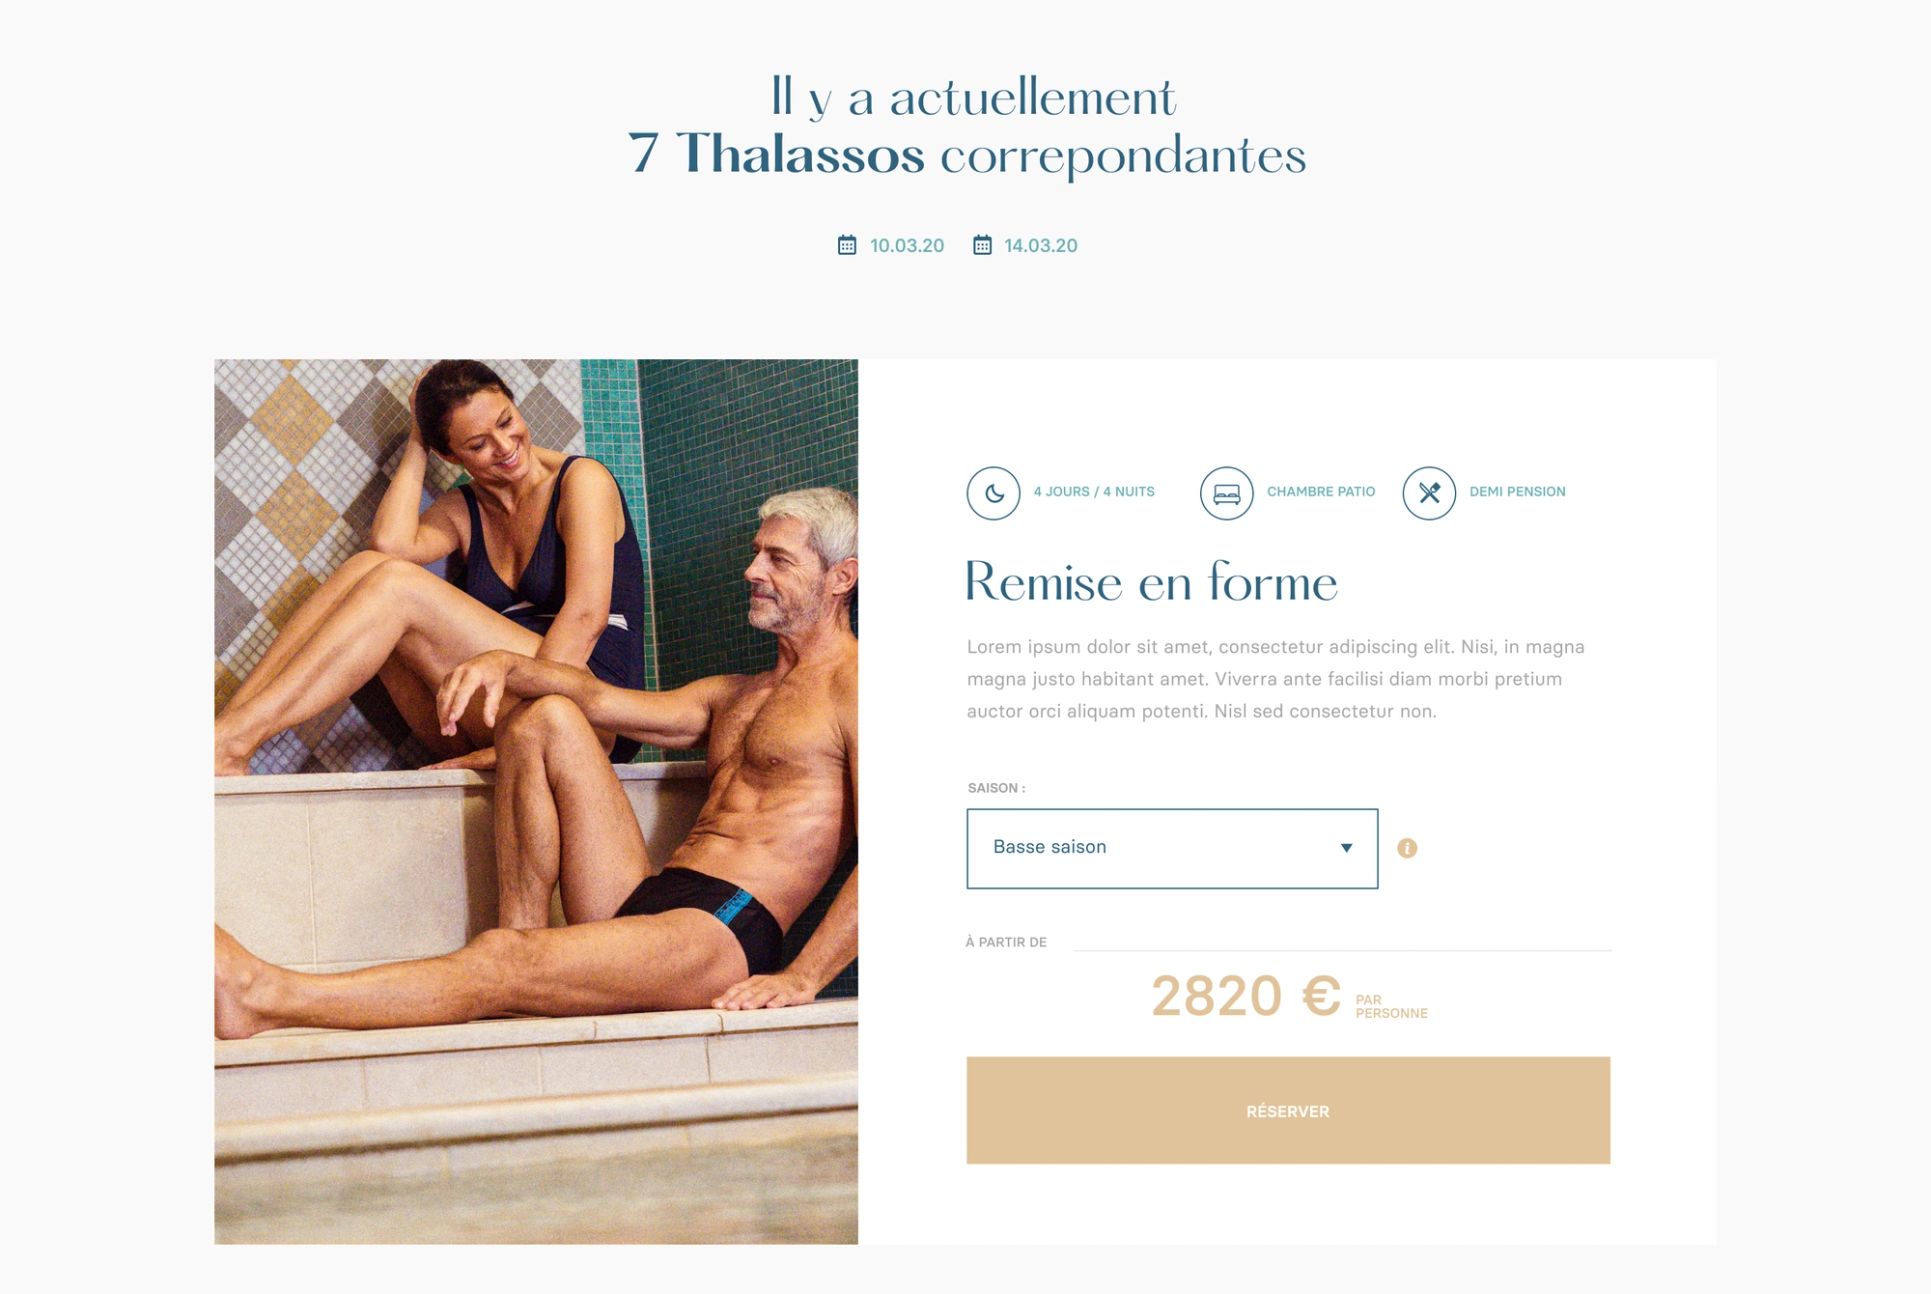 Alliance Pornic image fullscreen site e-commerce desktop slider bons plans offres